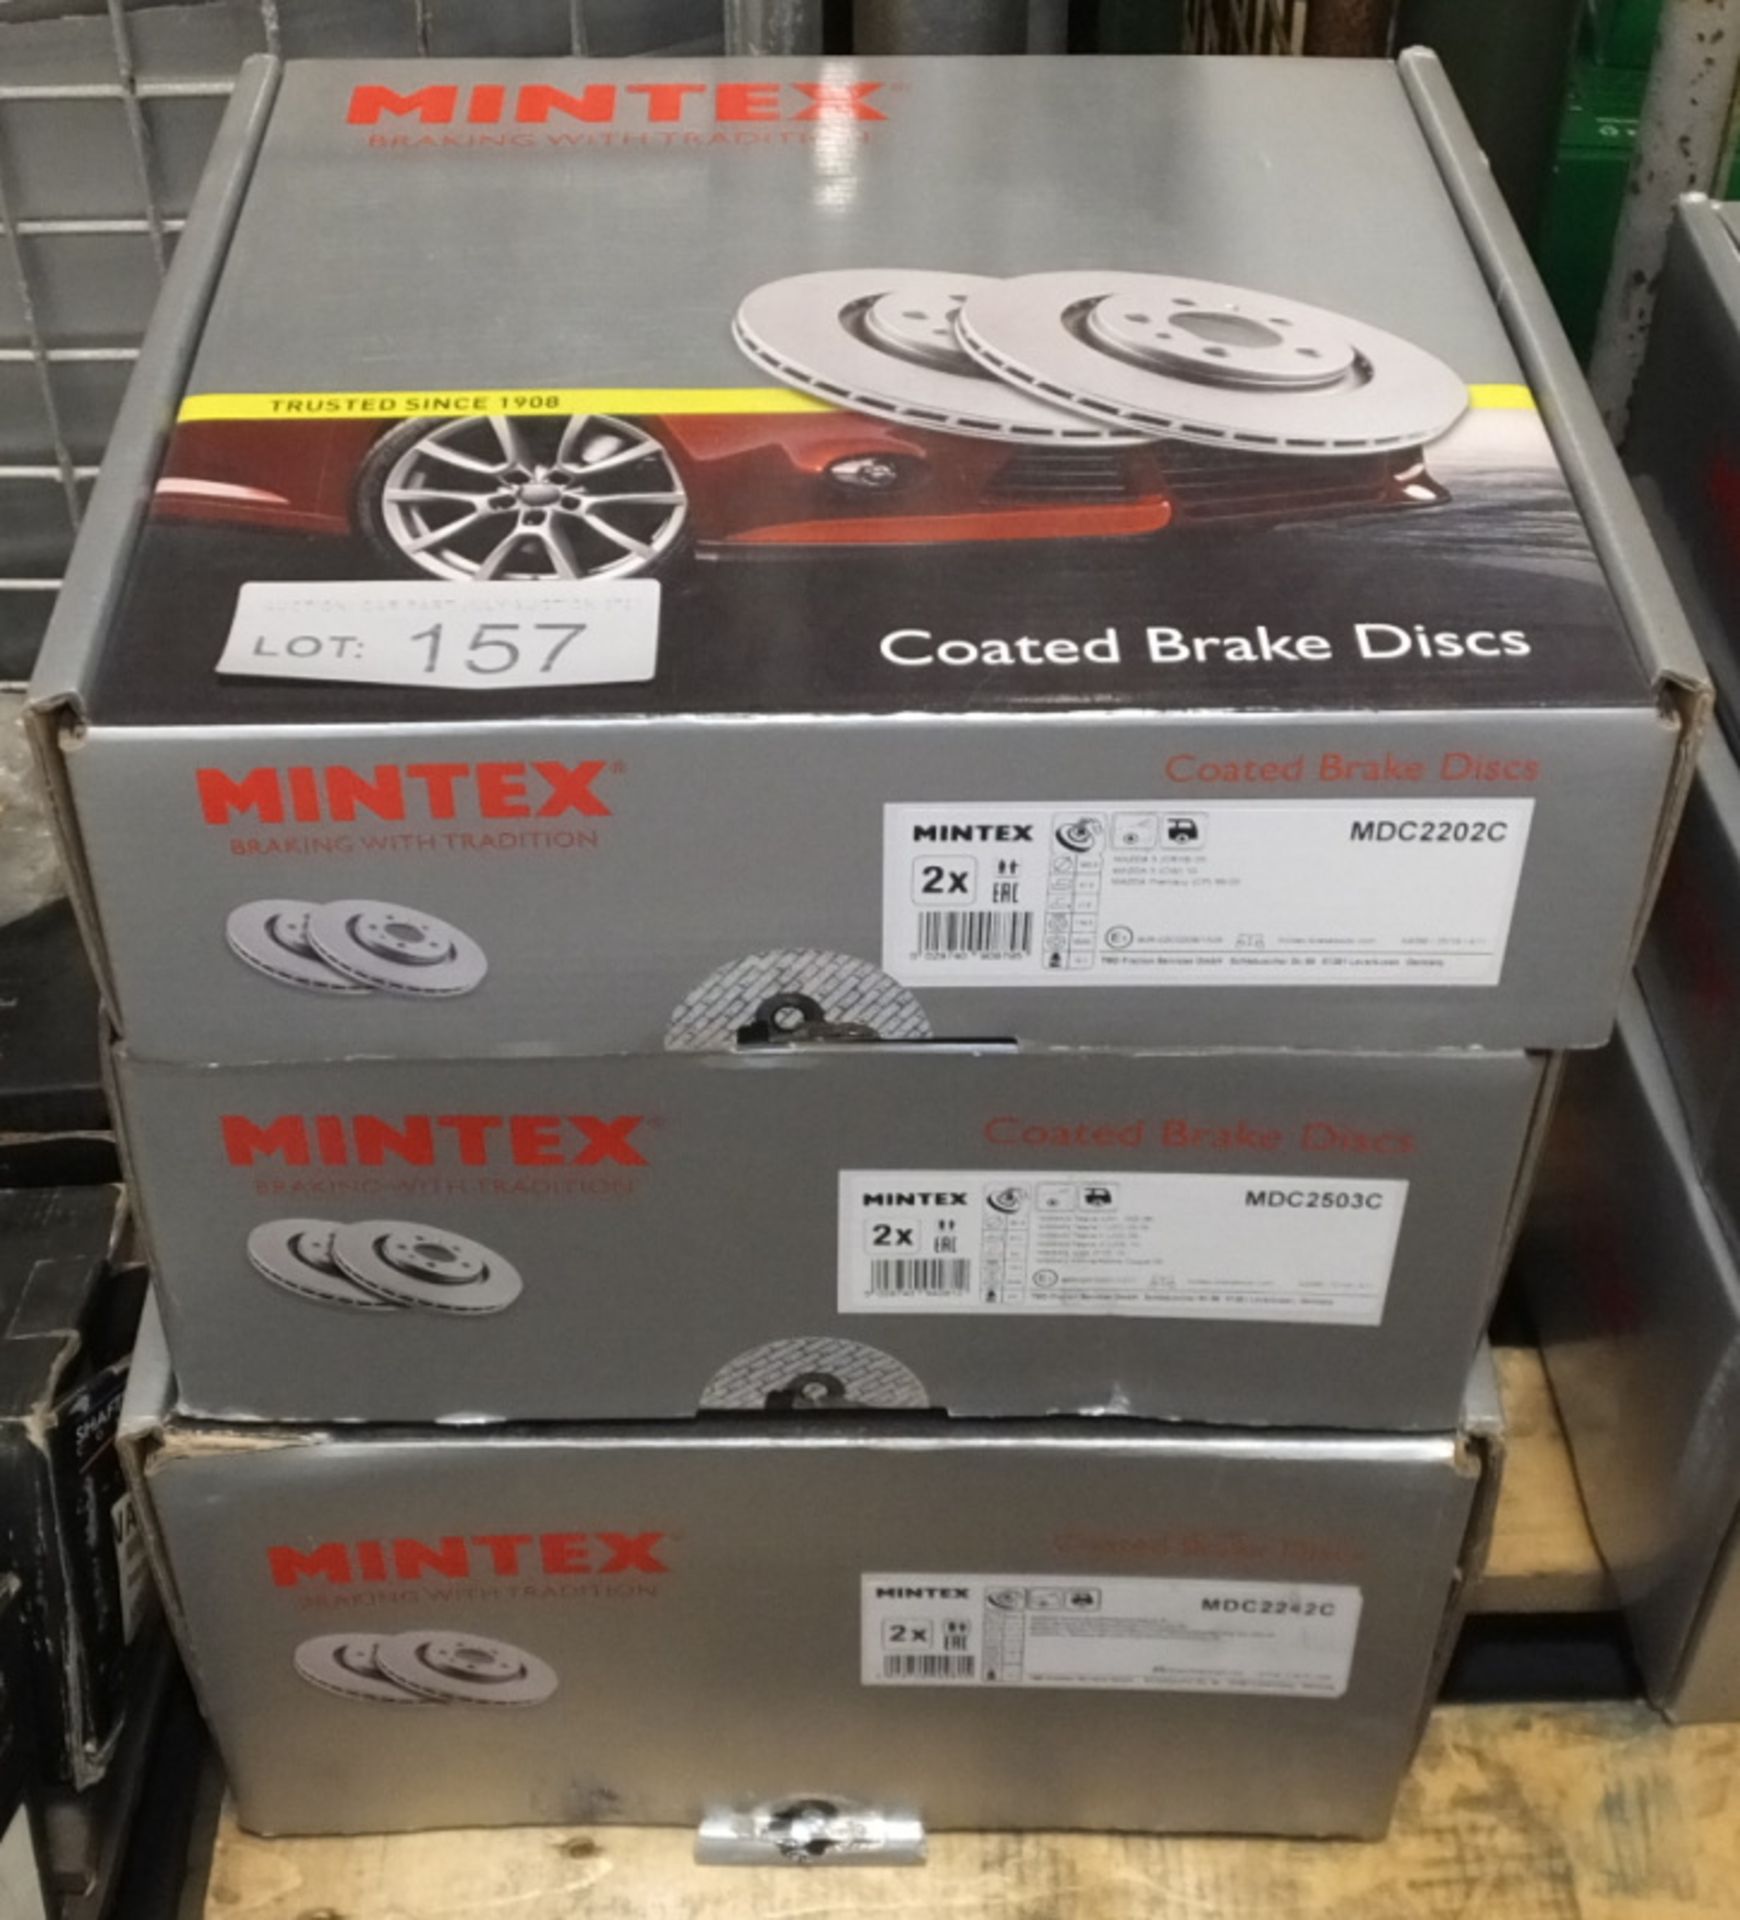 Mintex Brake Discs model numbers MDC2202C, MDC2503C, MDC2242C